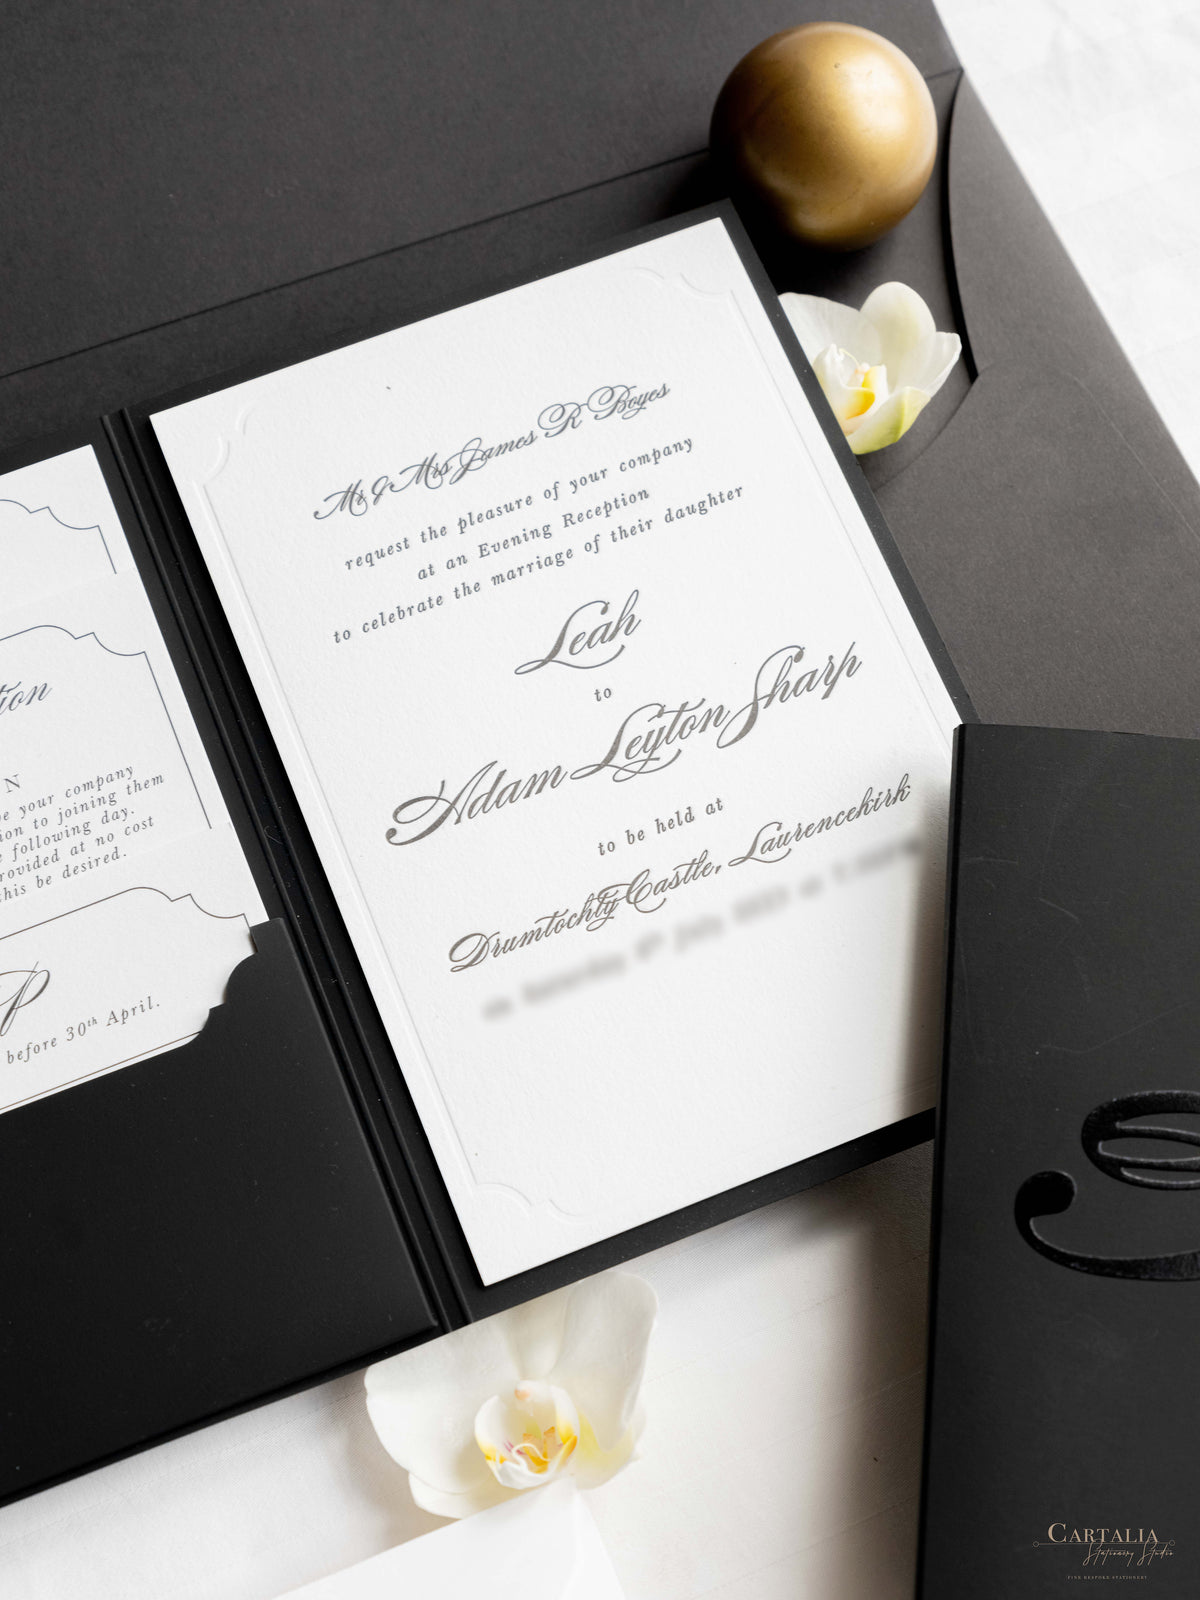 Bolsillo de noche de tapa dura de lujo en blanco y negro con monograma de lámina dorada | Comisión personalizada para A&amp;M